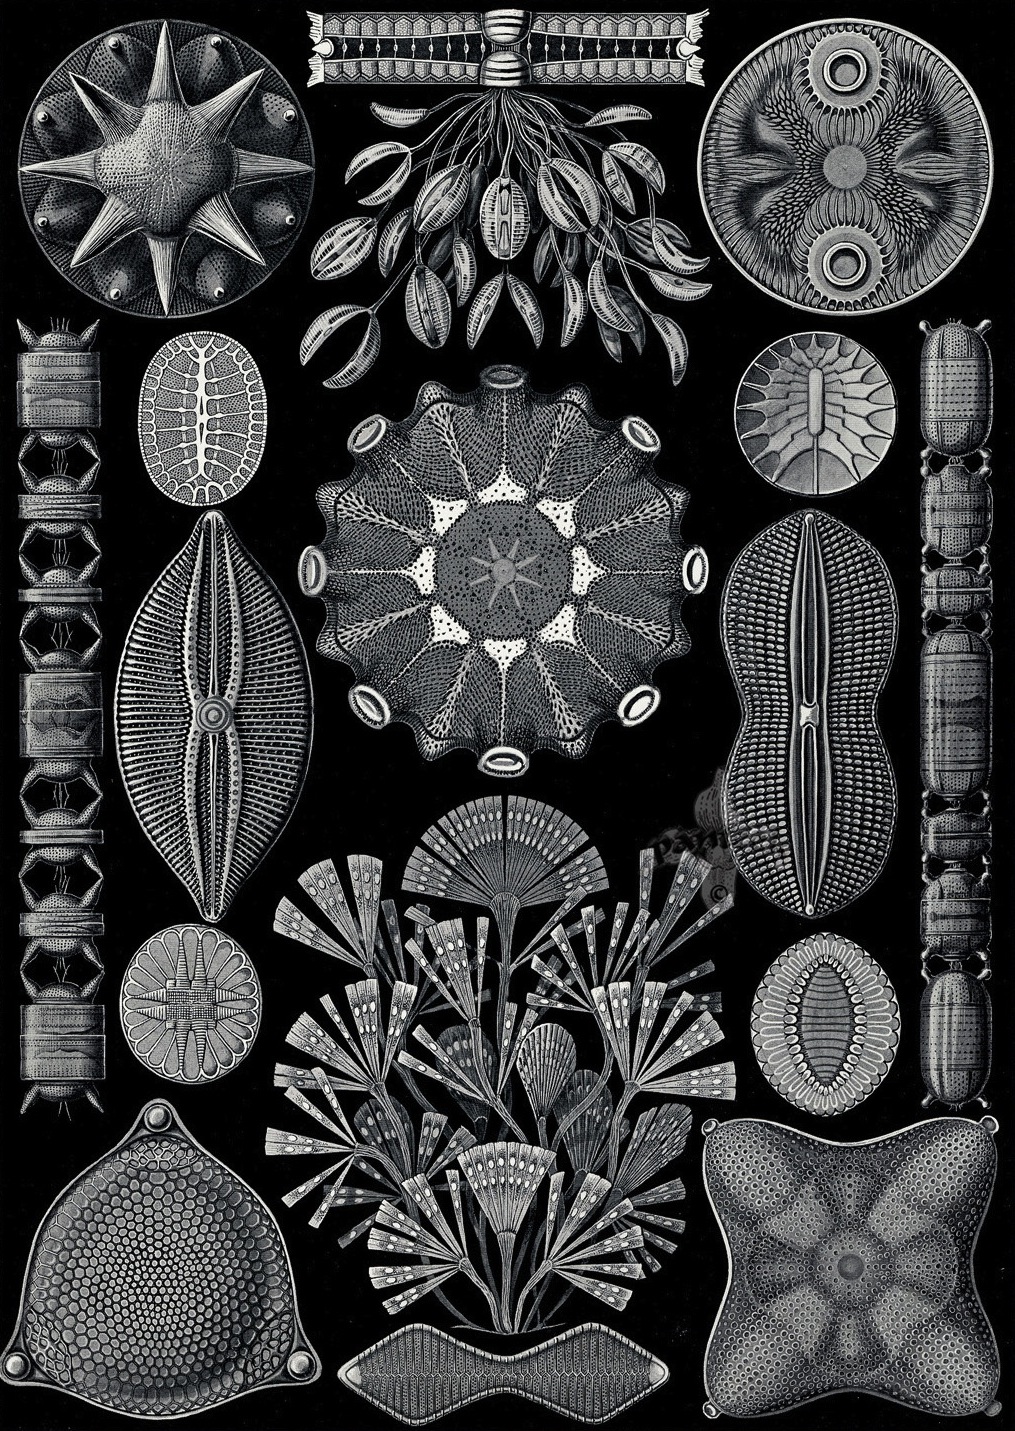 Kunstformen der Natur - Ernst Haeckel 1899-1904 (2).jpg